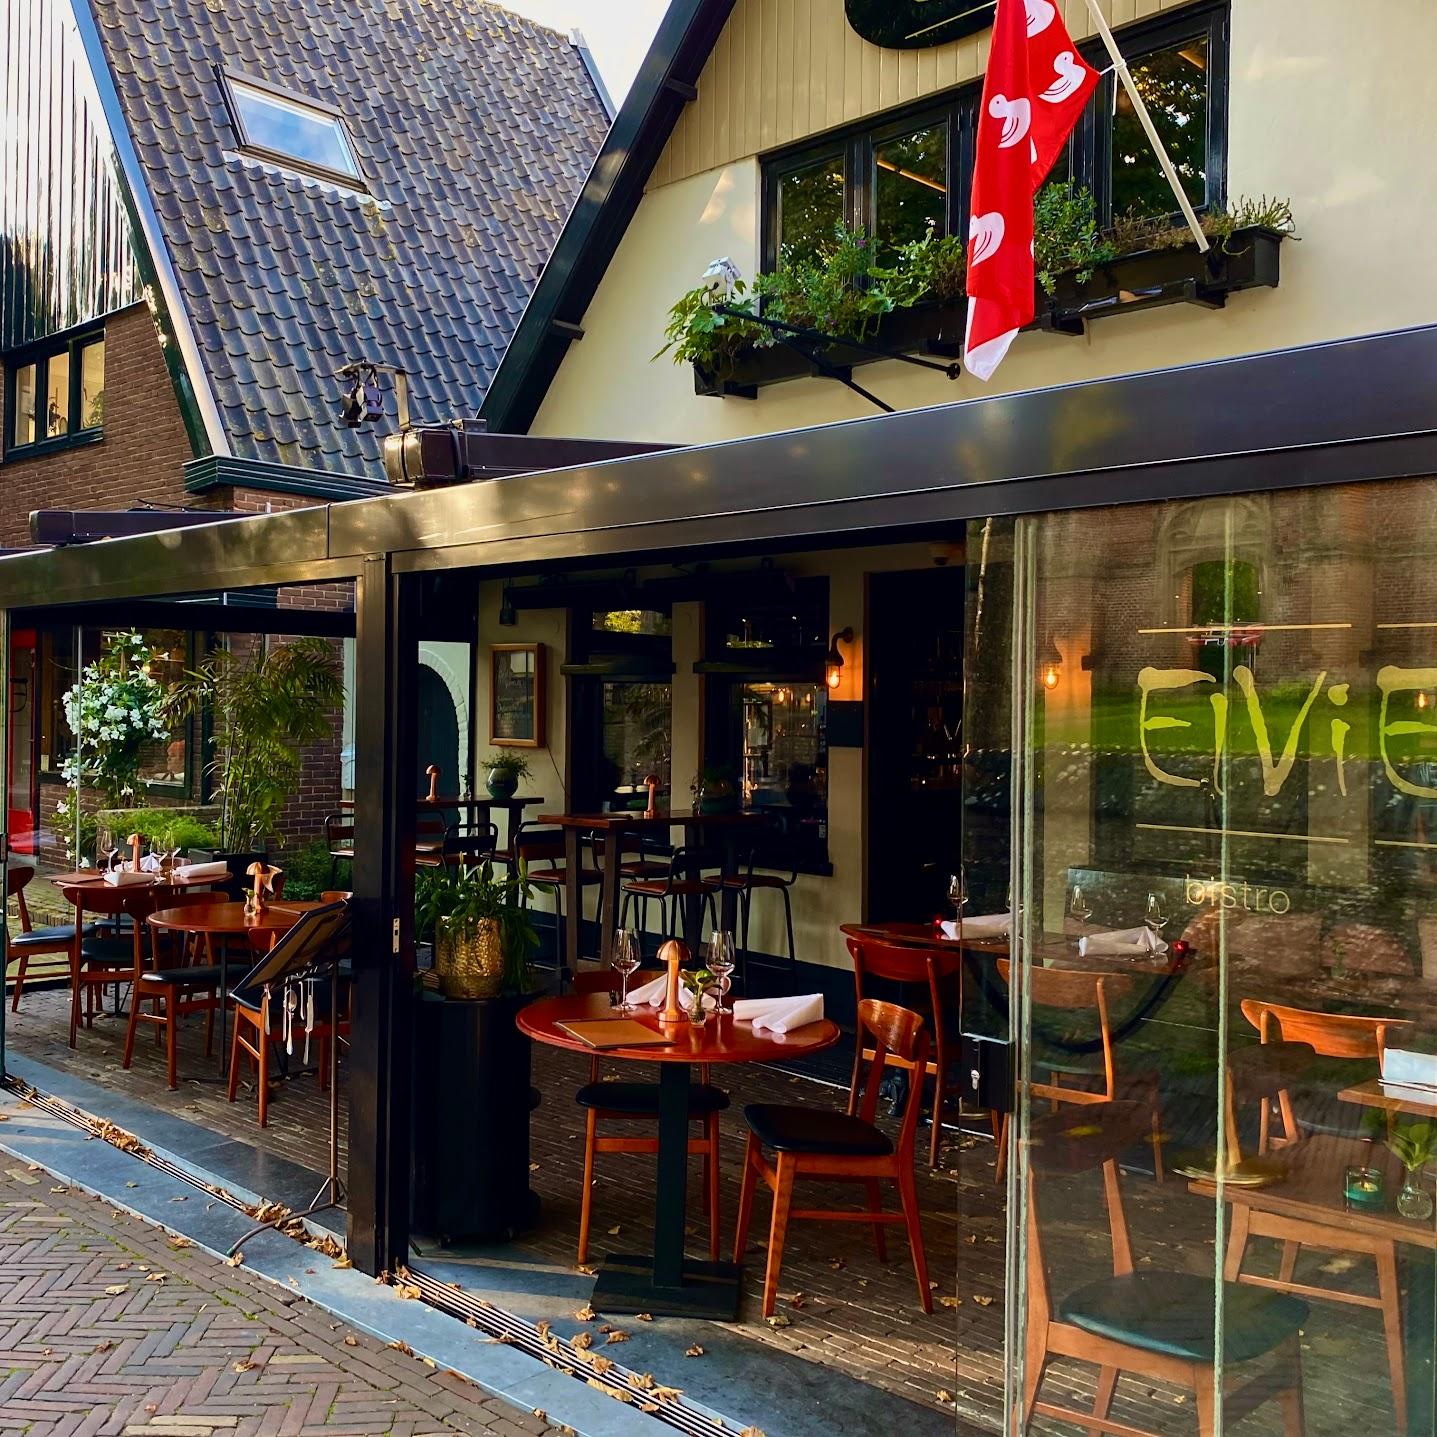 Restaurant "bistro ElVi" in Bergen